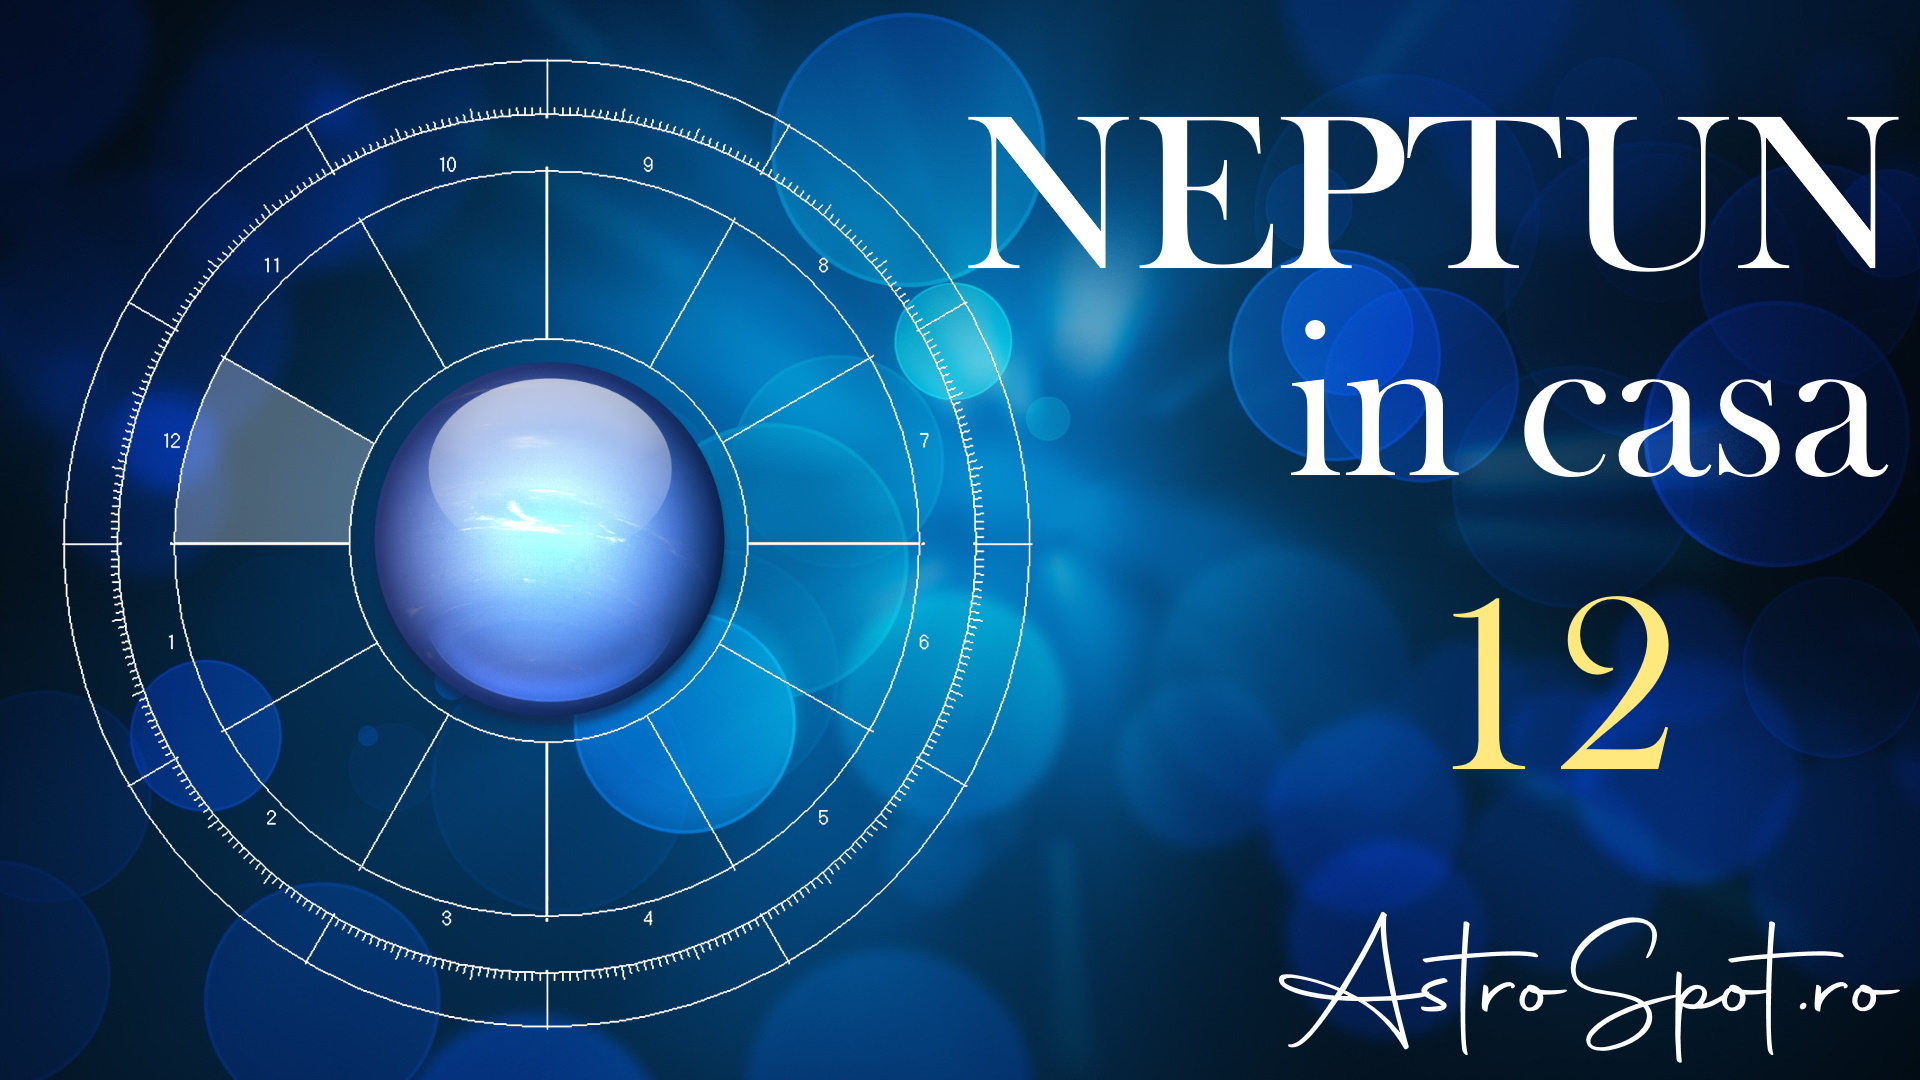 Neptun in casa 12